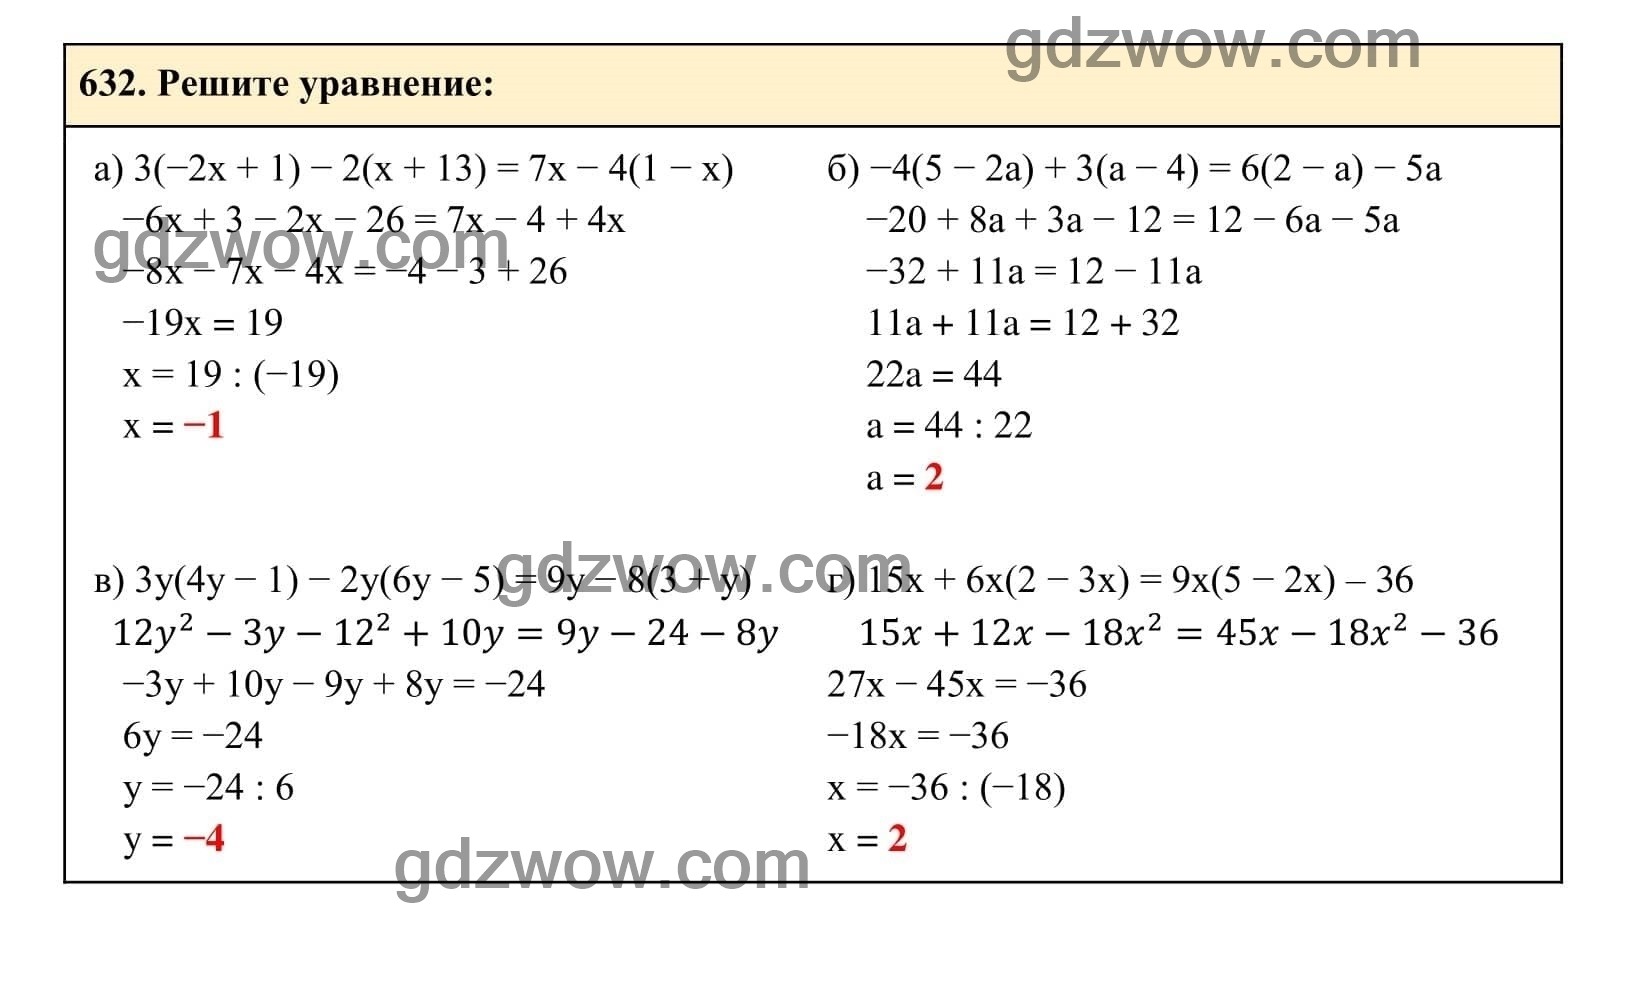 Упражнение 632 - ГДЗ по Алгебре 7 класс Учебник Макарычев (решебник) - GDZwow